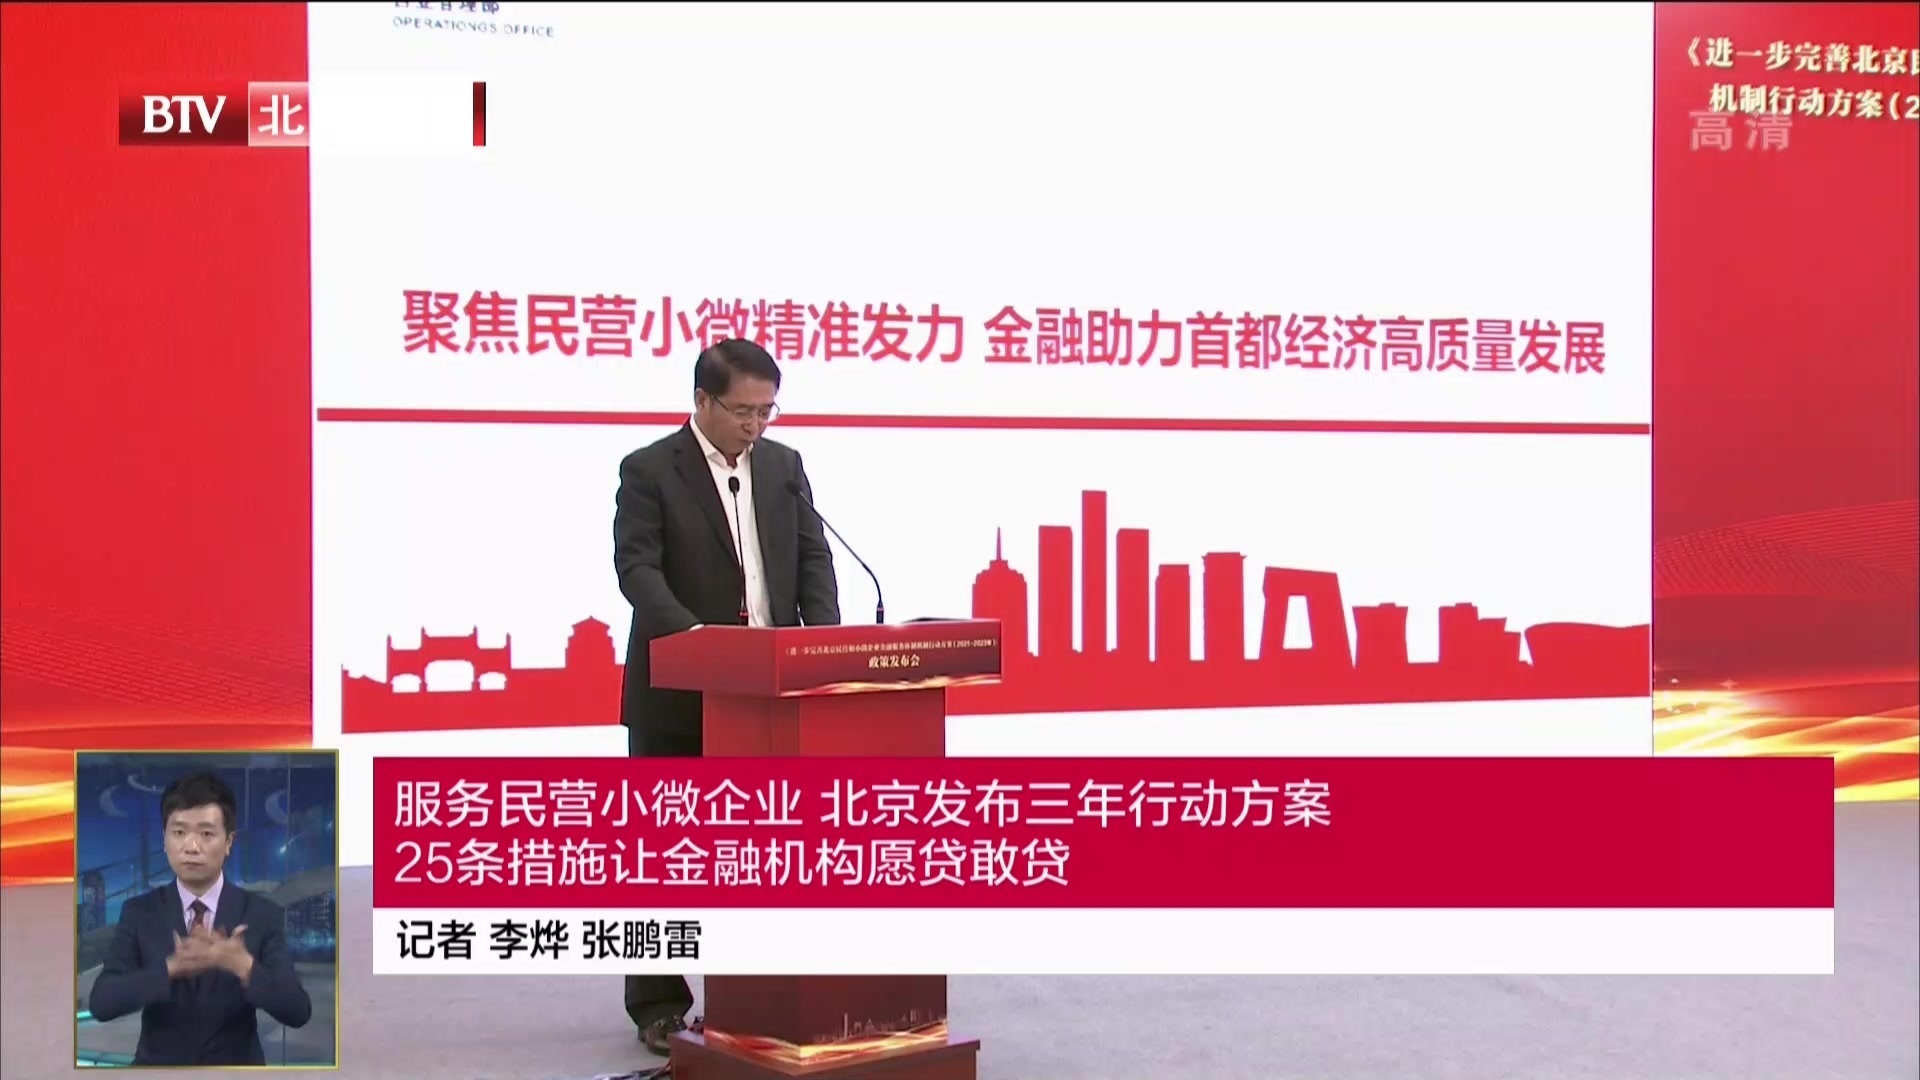 服务民营小微企业 北京发布三年行动方案 25条措施让金融机构愿贷敢贷